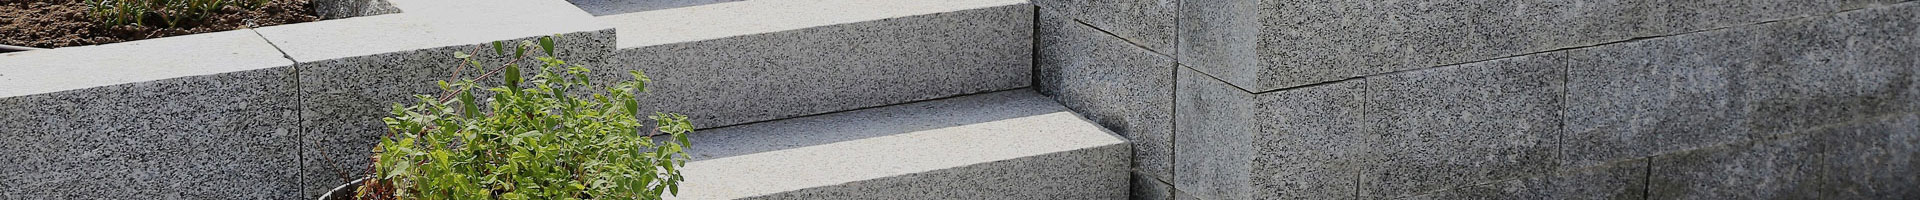 Granit Mauersteine, Granitsteine, Gartensteine, Lagerfugen gesägt 40x40x60 cm